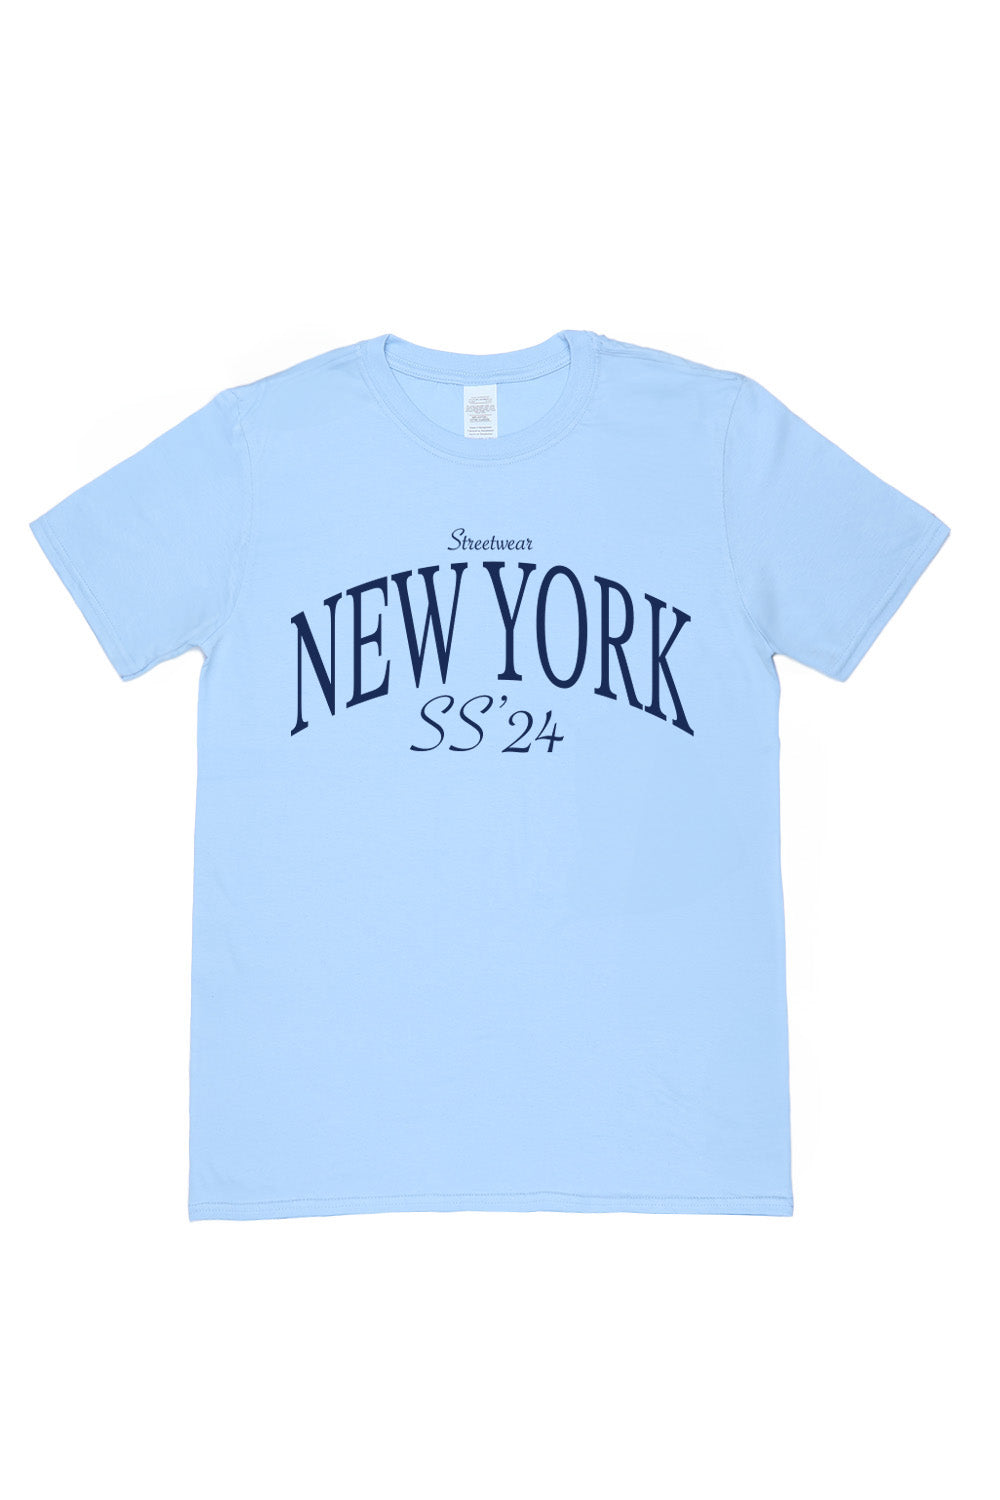 New York T-Shirt in Light Blue (Custom Packs)